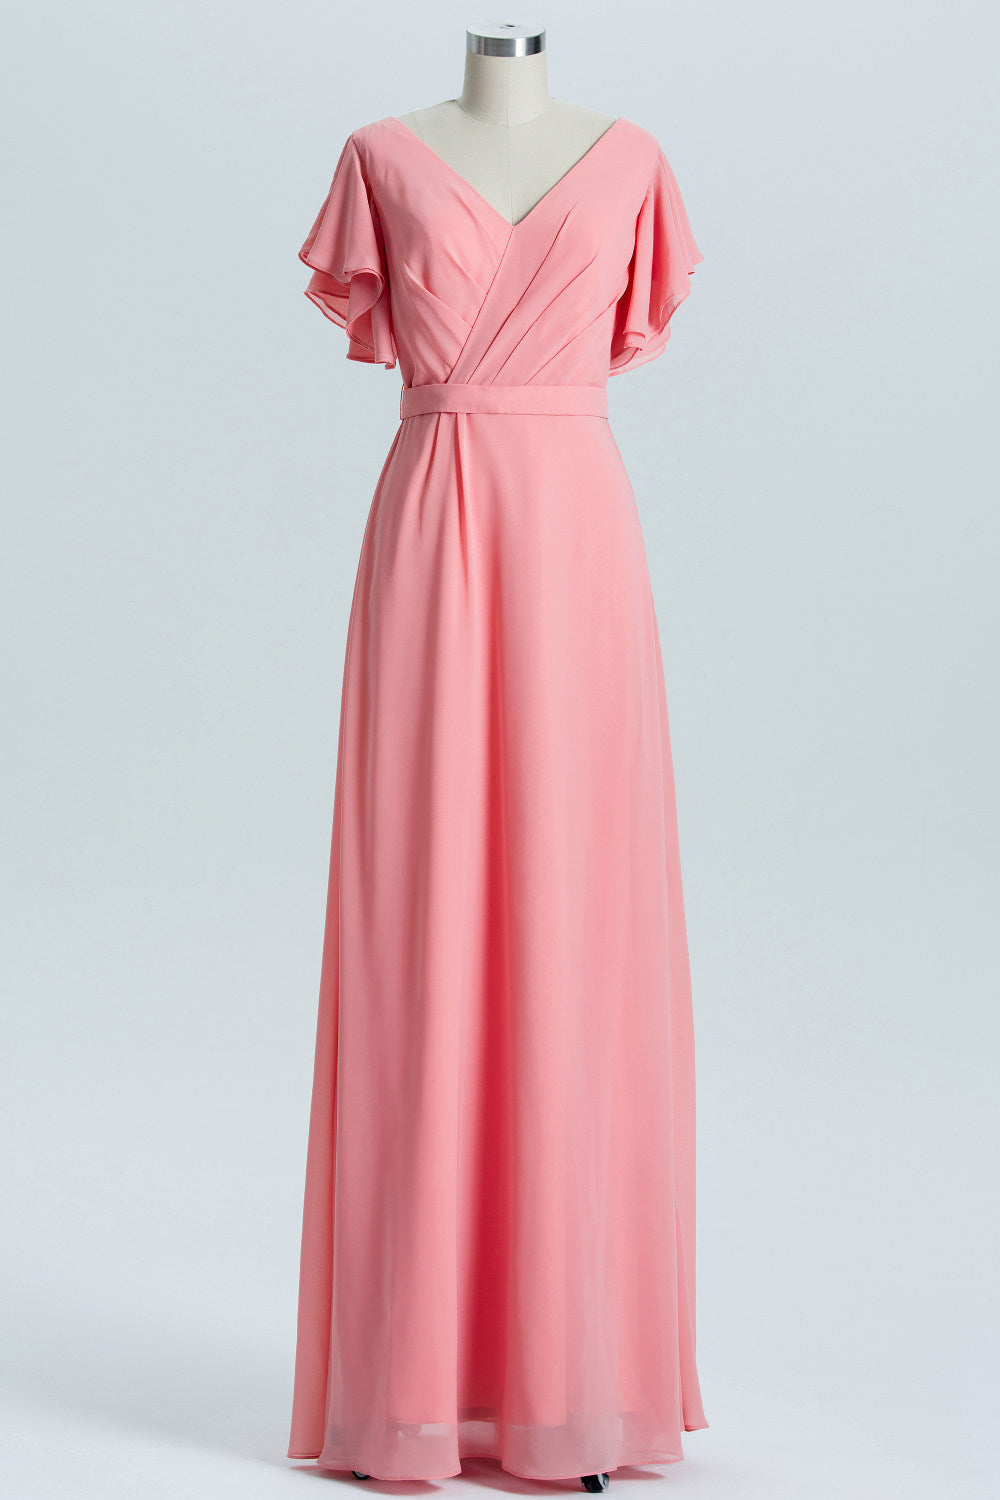 Silk Wedding Dress, Coral A-line Flutter Sleeves Long Bridesmaid Dress